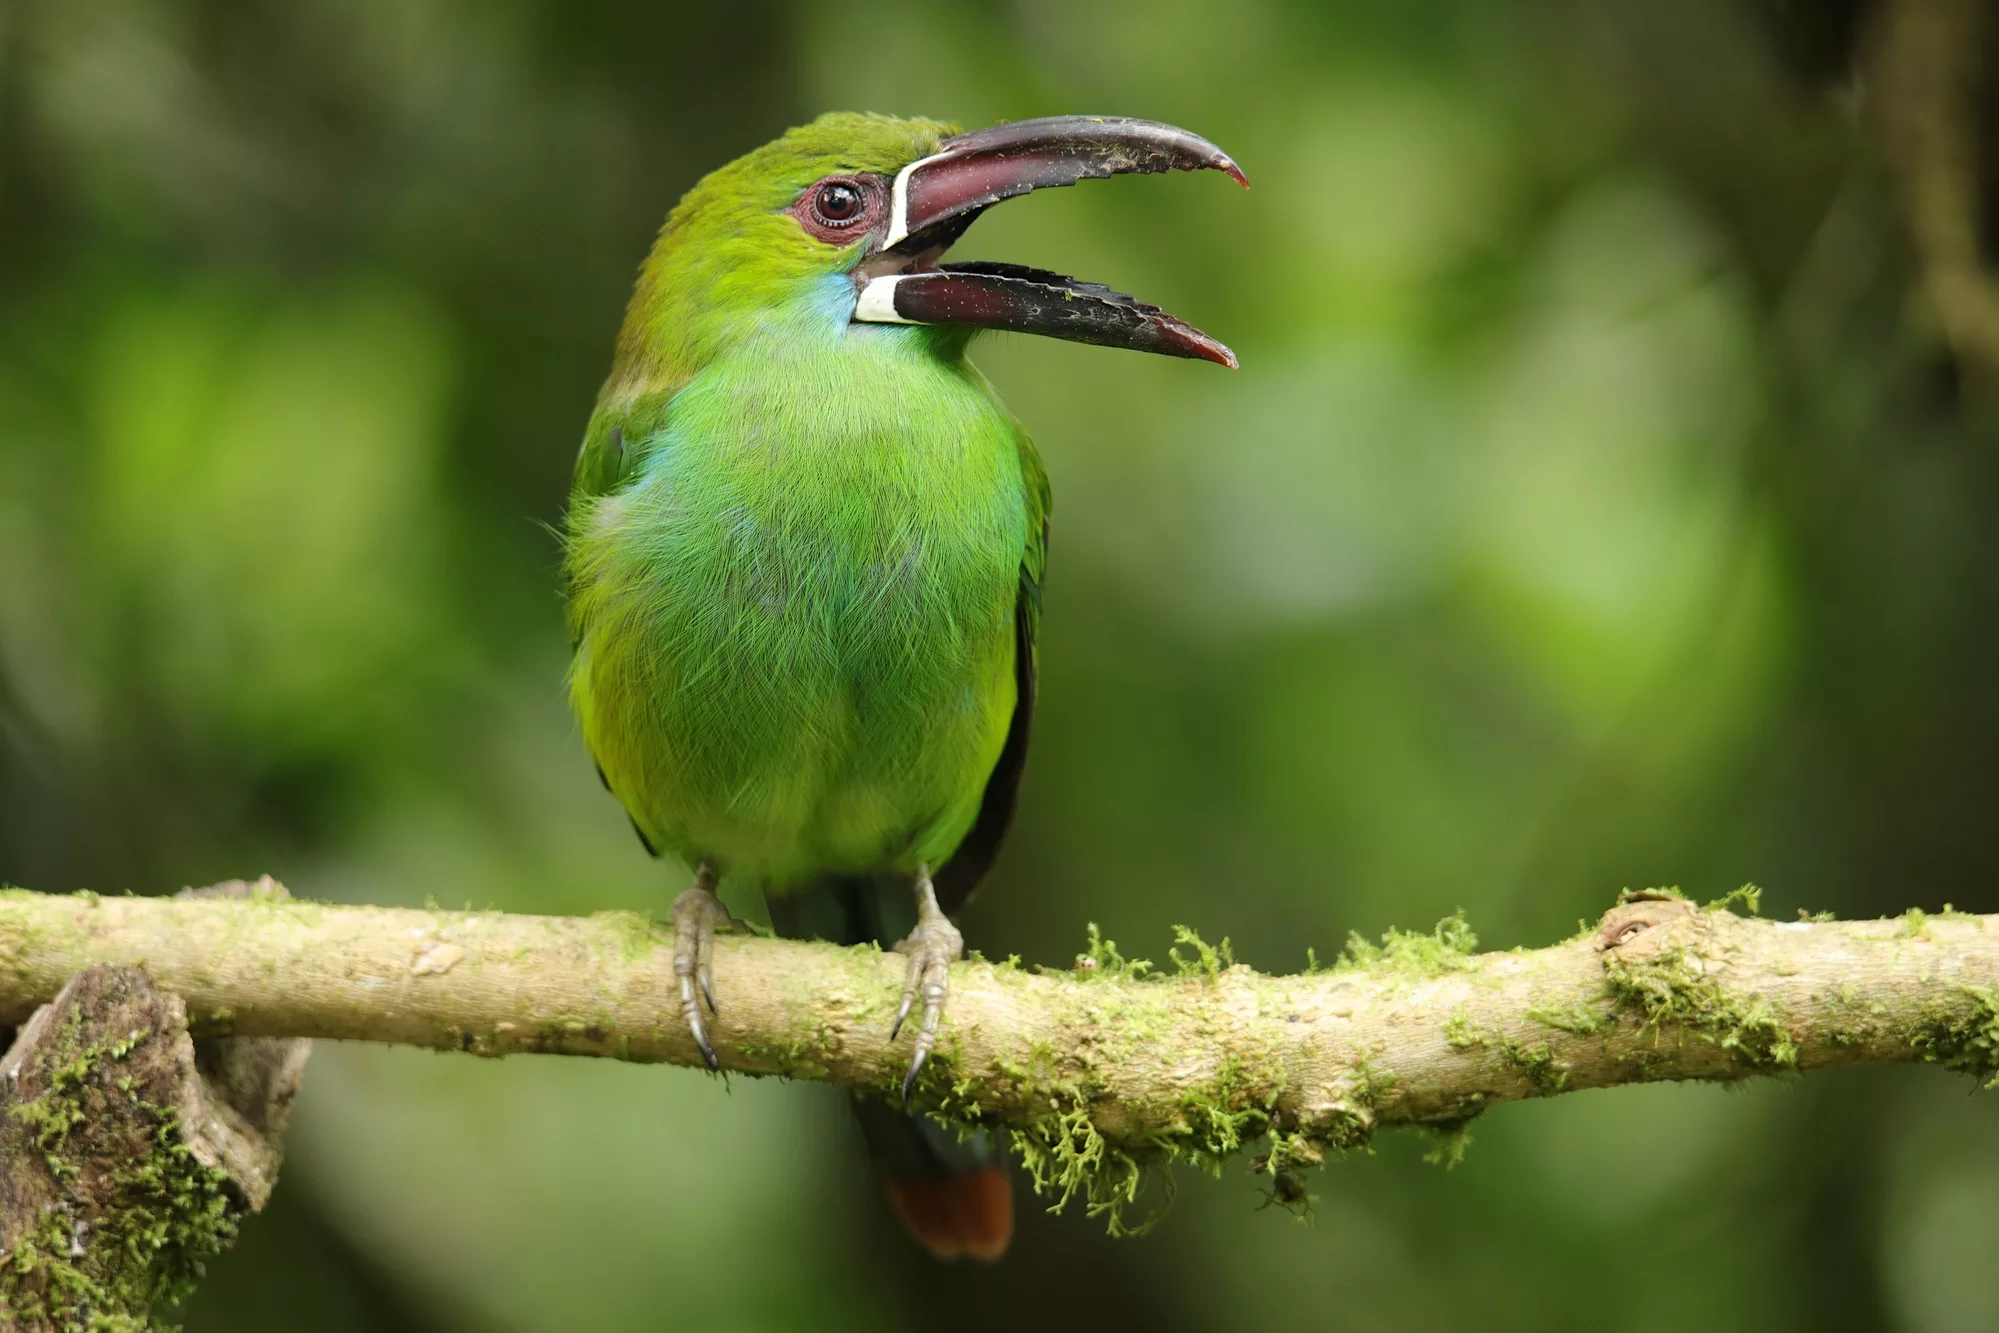 Ecuador wildlife photography safari, Crimson-rumped toucanet